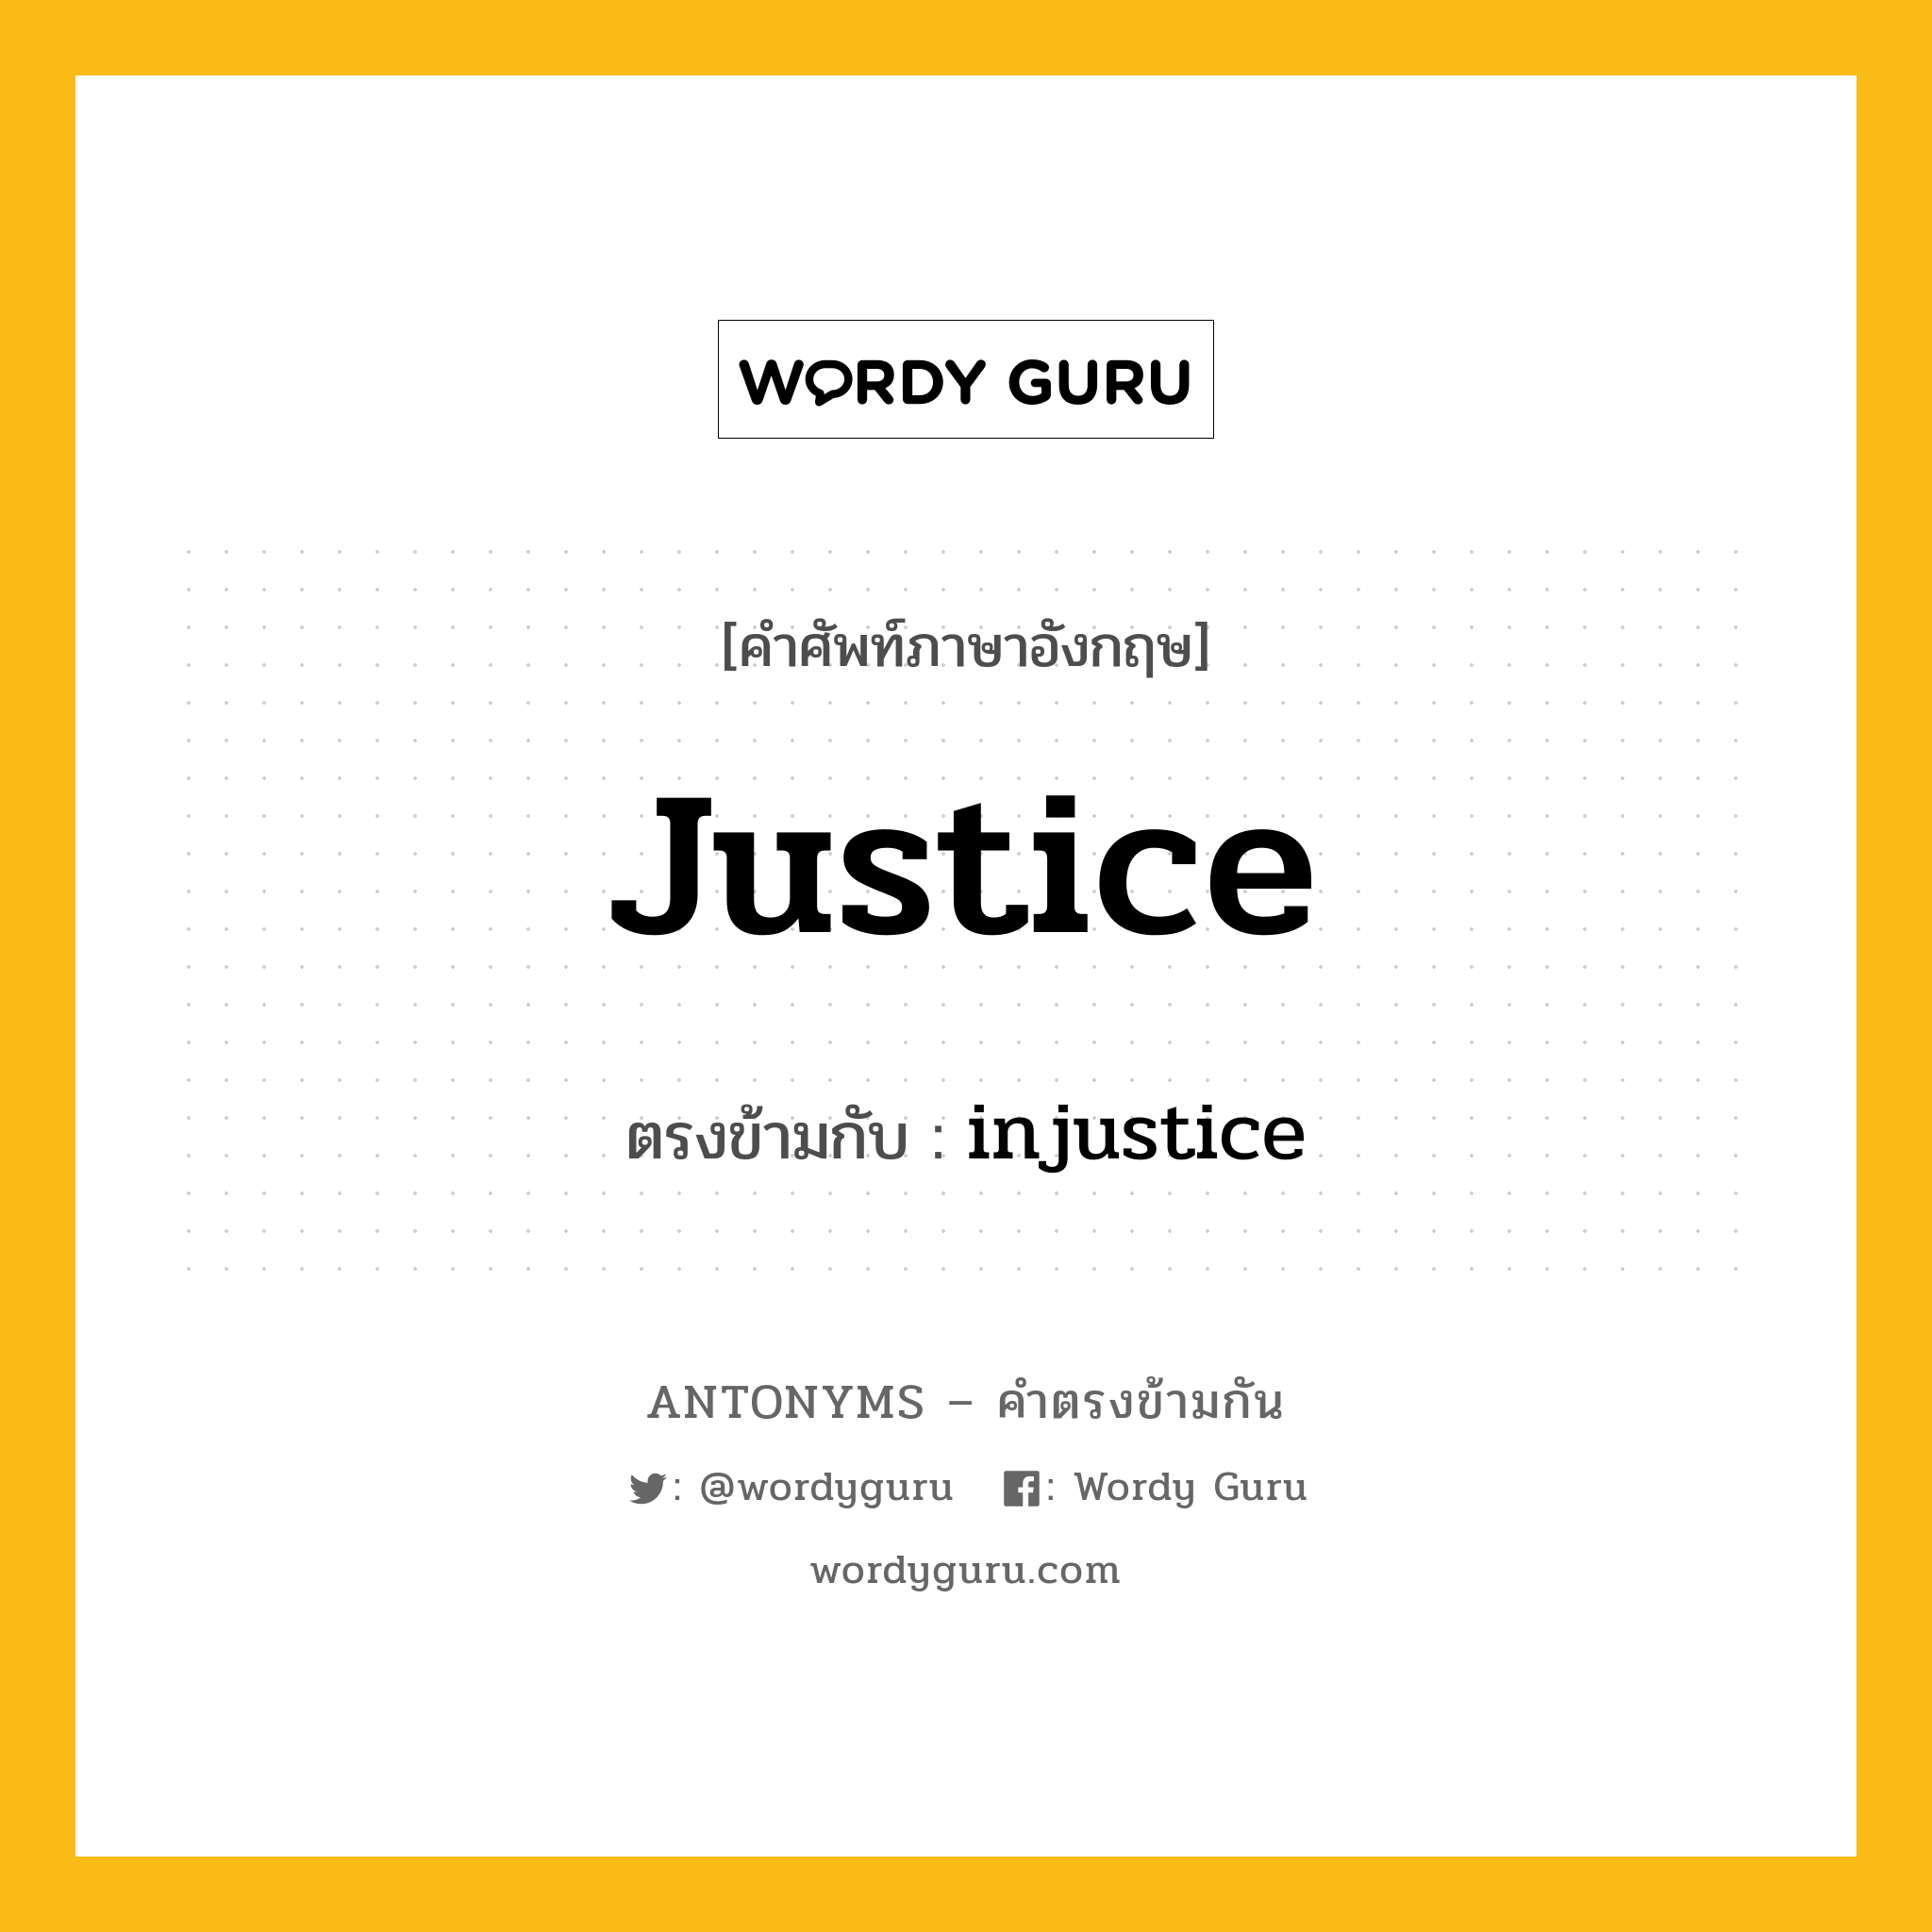 justice เป็นคำตรงข้ามกับคำไหนบ้าง?, คำศัพท์ภาษาอังกฤษ justice ตรงข้ามกับ injustice หมวด injustice